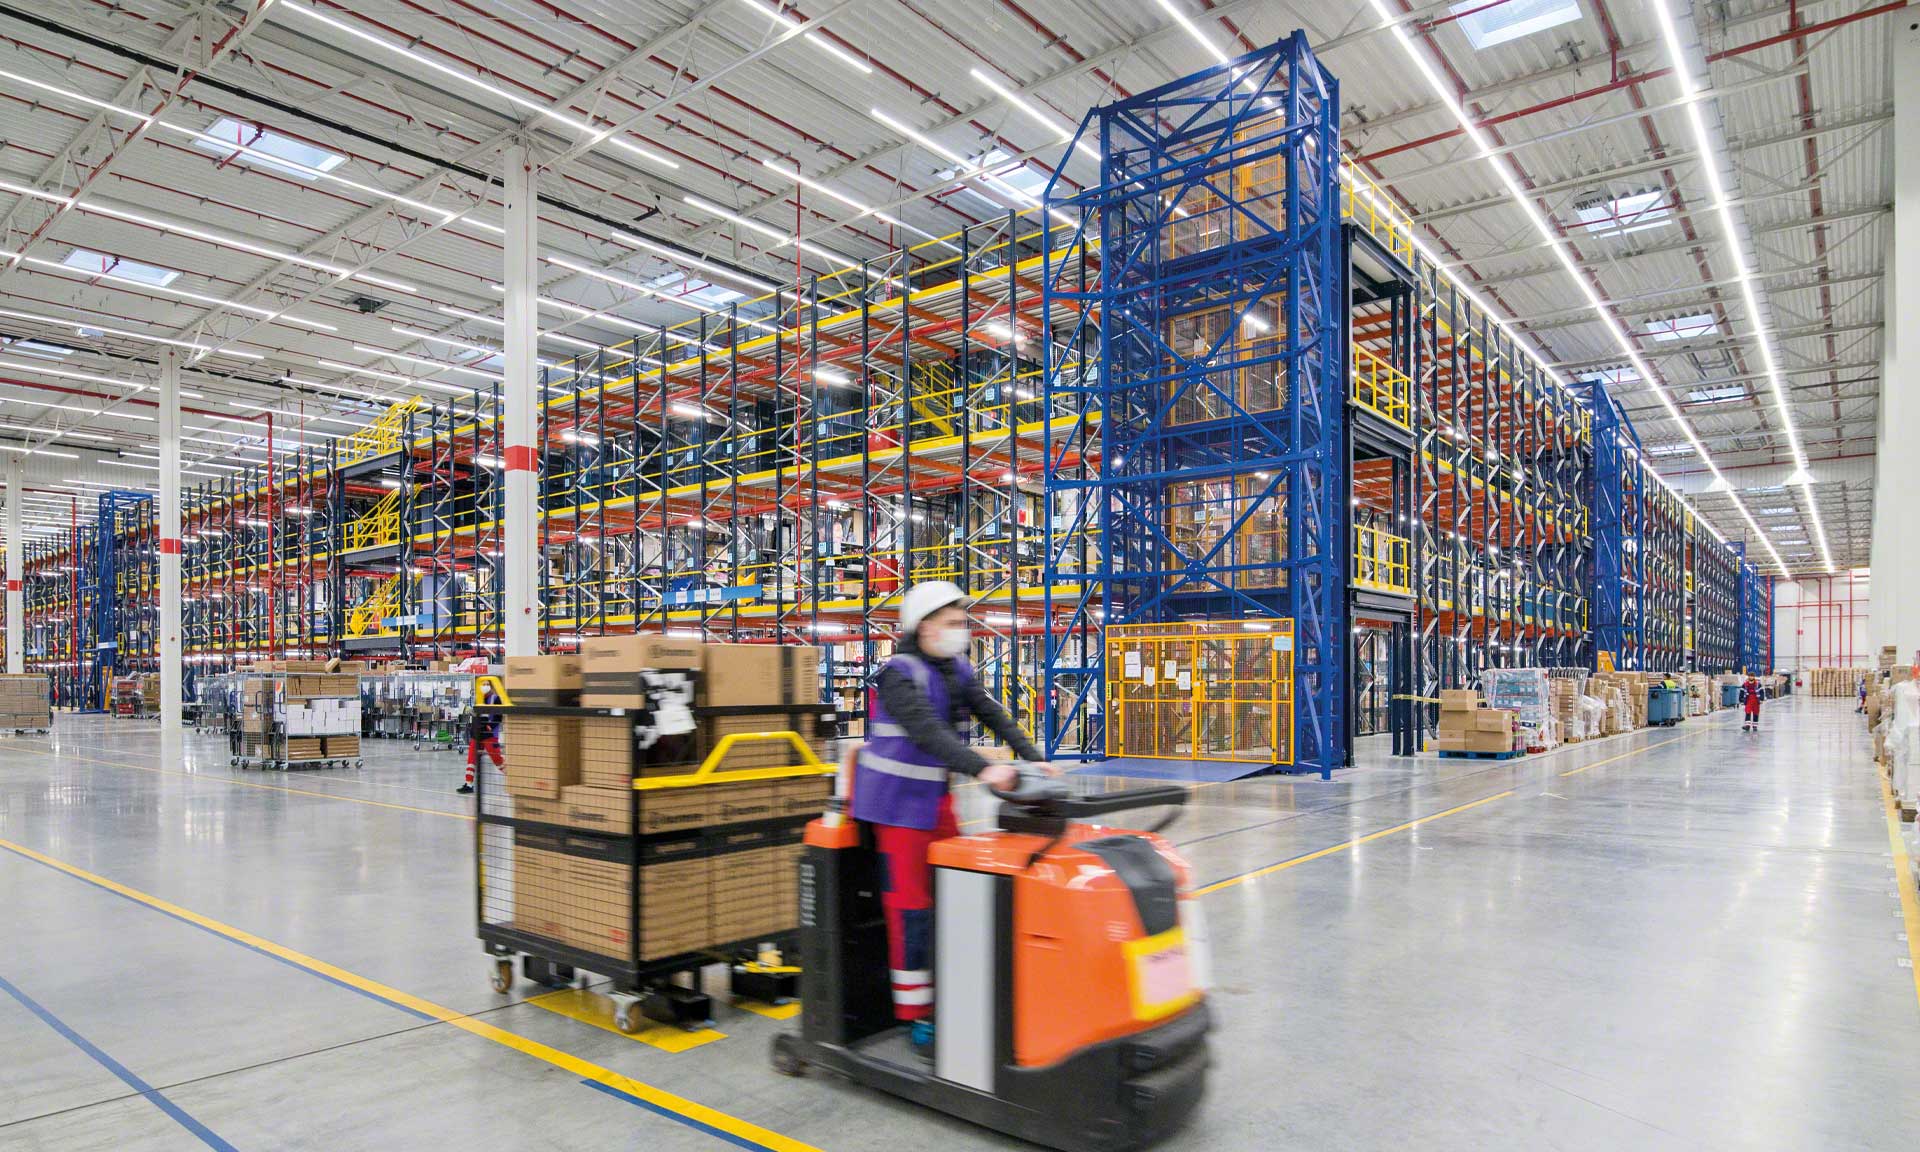 ID Logistics: magazzino e-commerce con il 300% in più di superficie